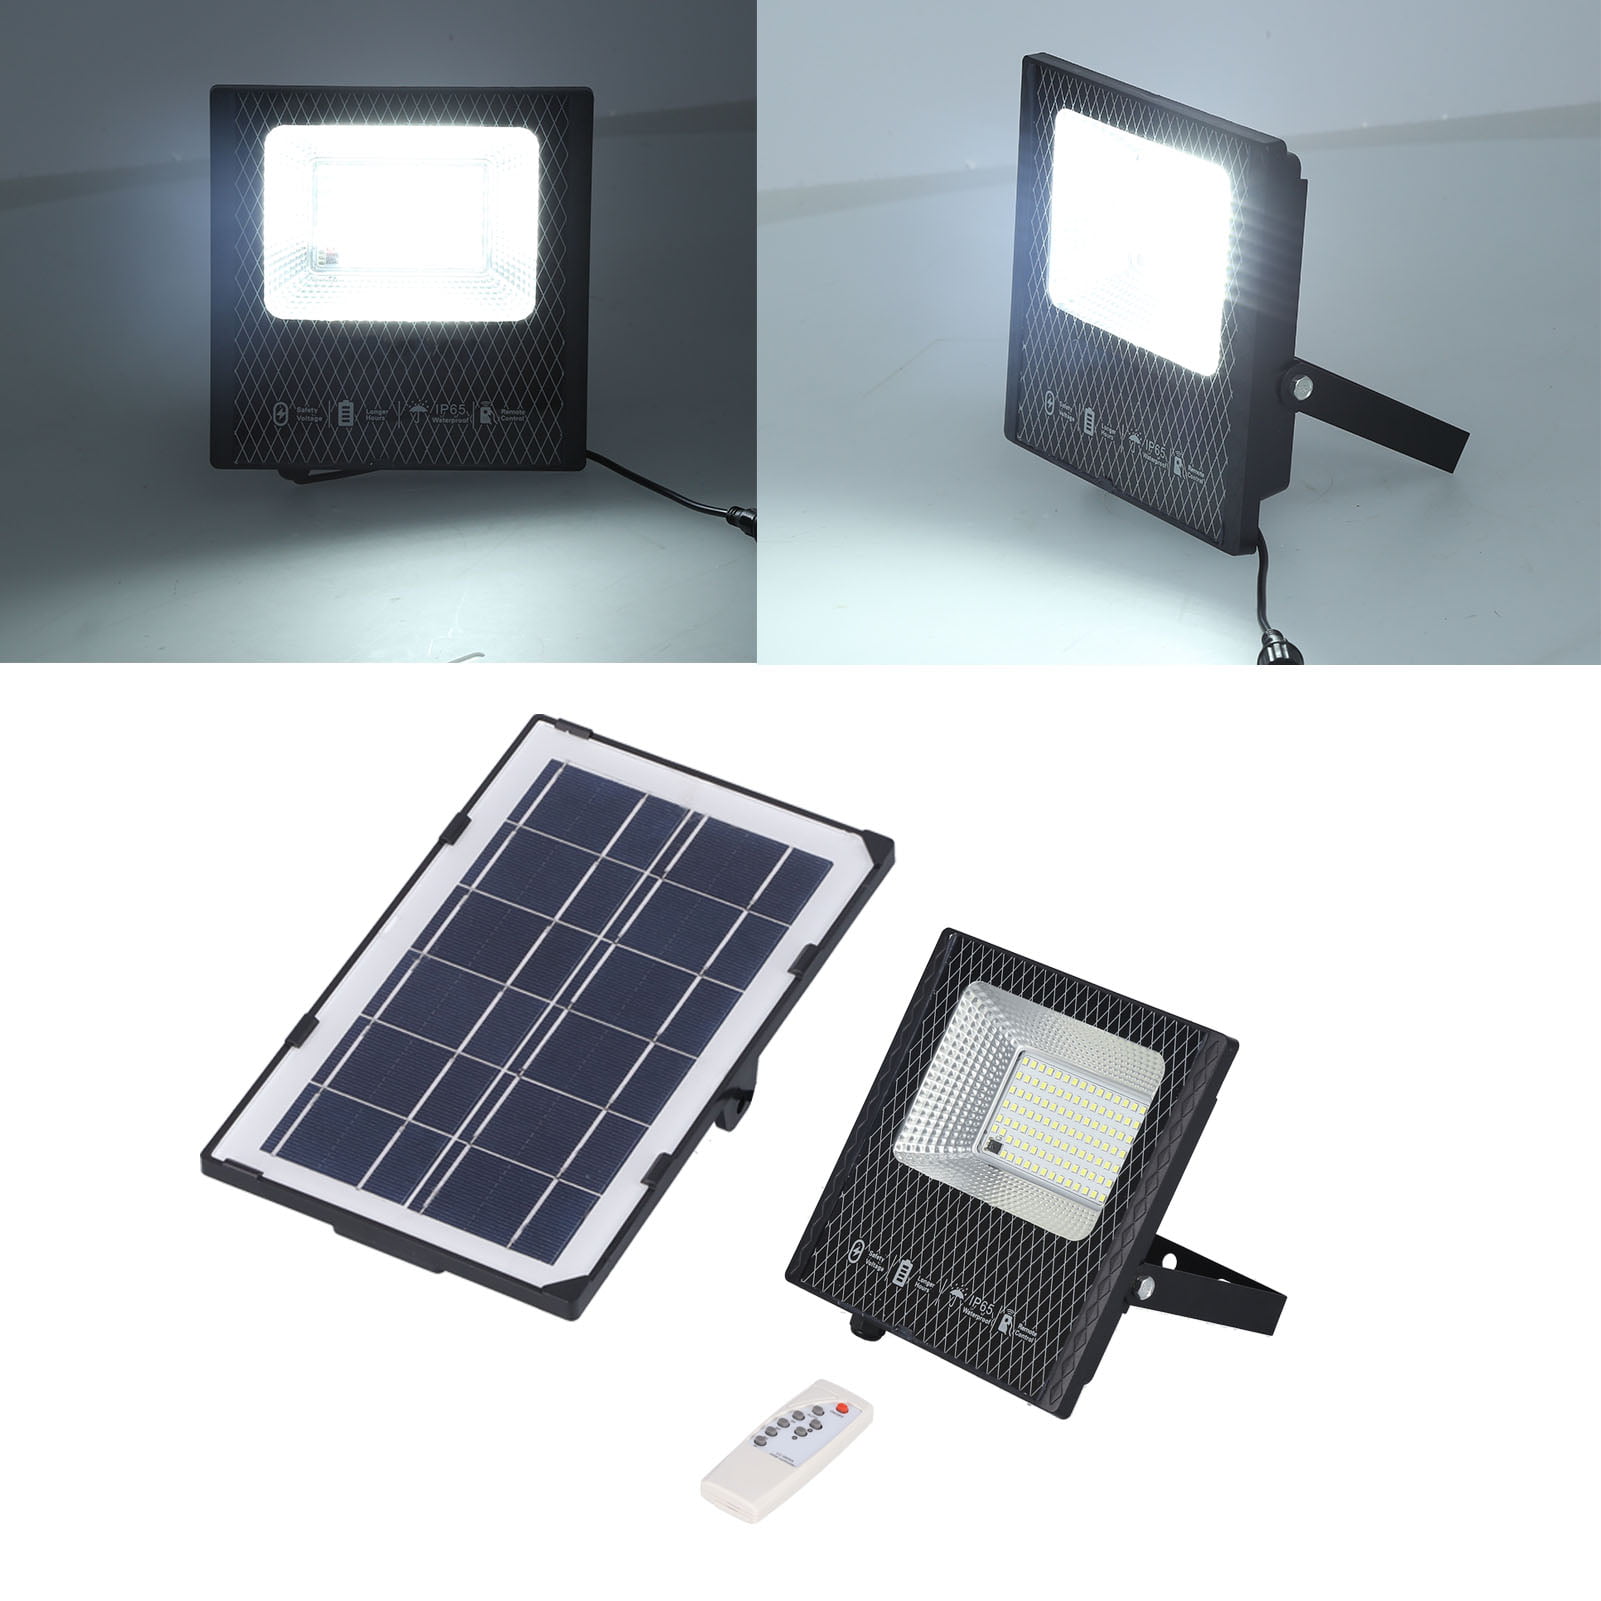 Bizlander 5Watt 60LED Solar Flood Light Home shop or sign lighting xmas gift 